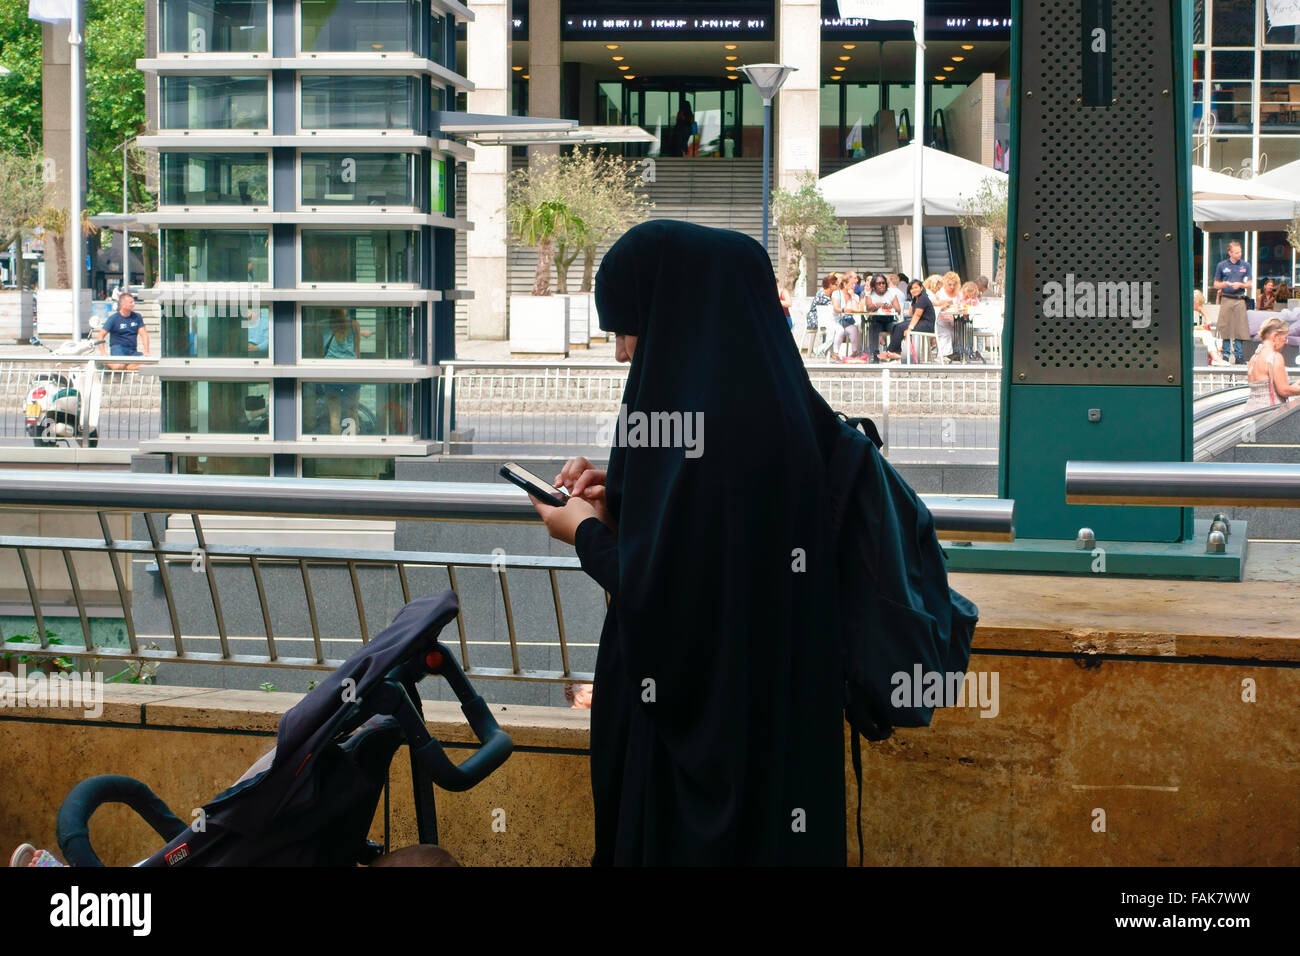 muslimische Frau trägt Burka traditionelle Kleidung, mit einem Handy. Einkaufszentrum. Rotterdam, Niederlande, Europa, Europäische Union, EU Stockfoto